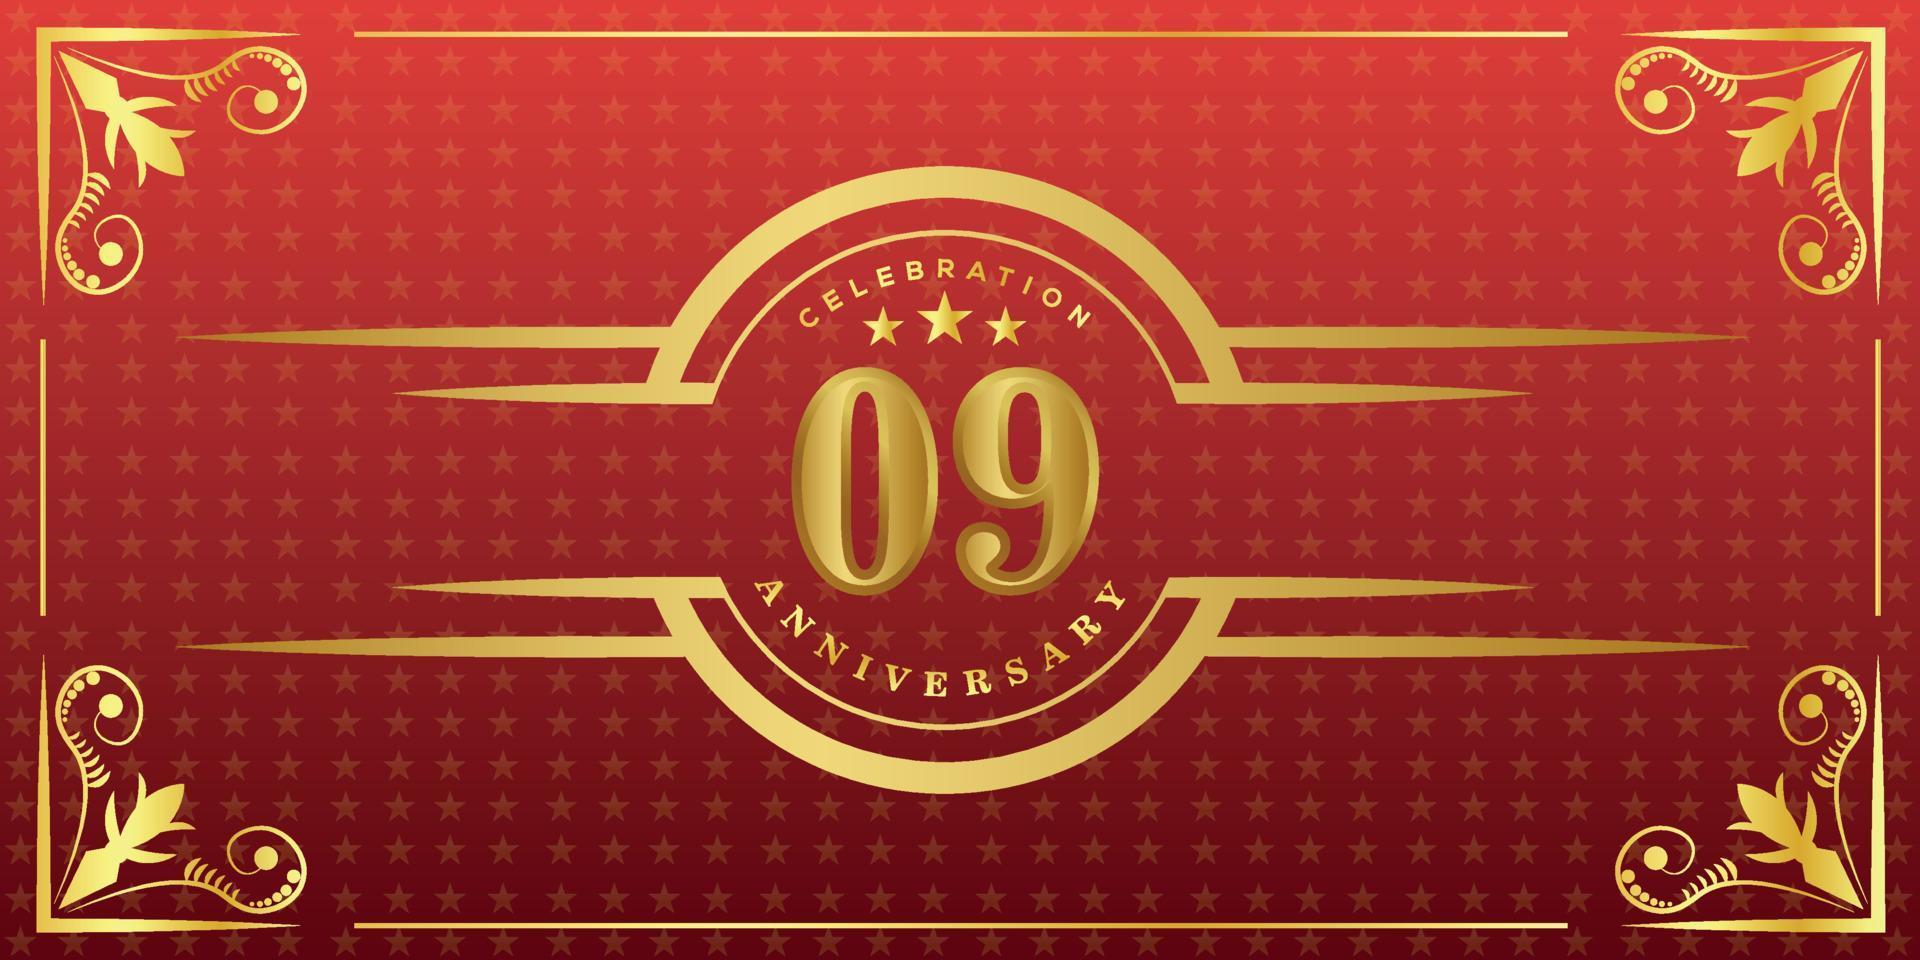 Logotipo del noveno aniversario con anillo dorado, confeti y borde dorado aislado en un elegante fondo rojo, brillo, diseño vectorial para tarjetas de felicitación y tarjetas de invitación vector